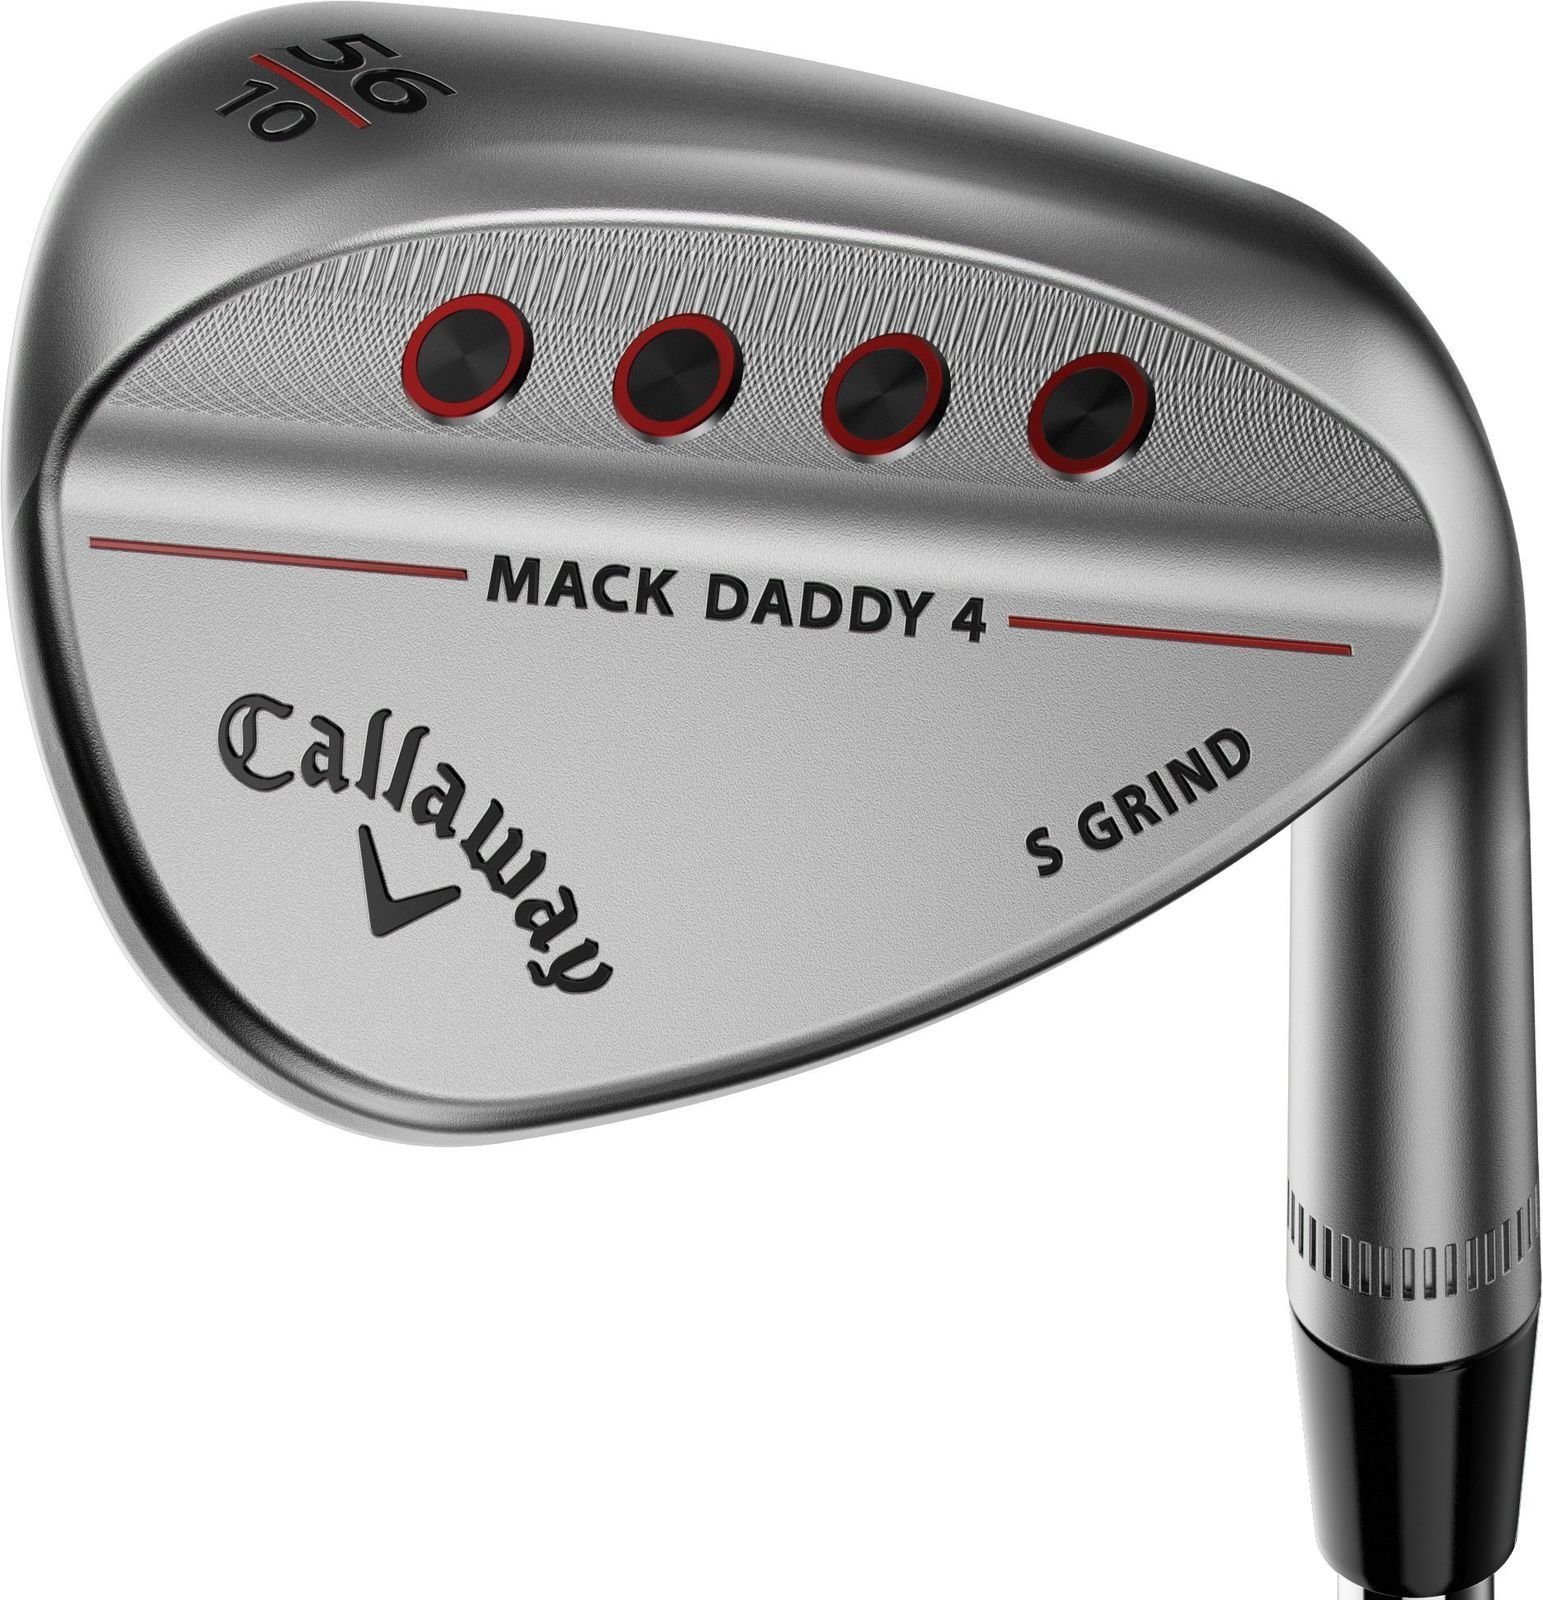 Club de golf - wedge Callaway Mack Daddy 4 Chrome Wedge 60-12 W-Grind gauchier